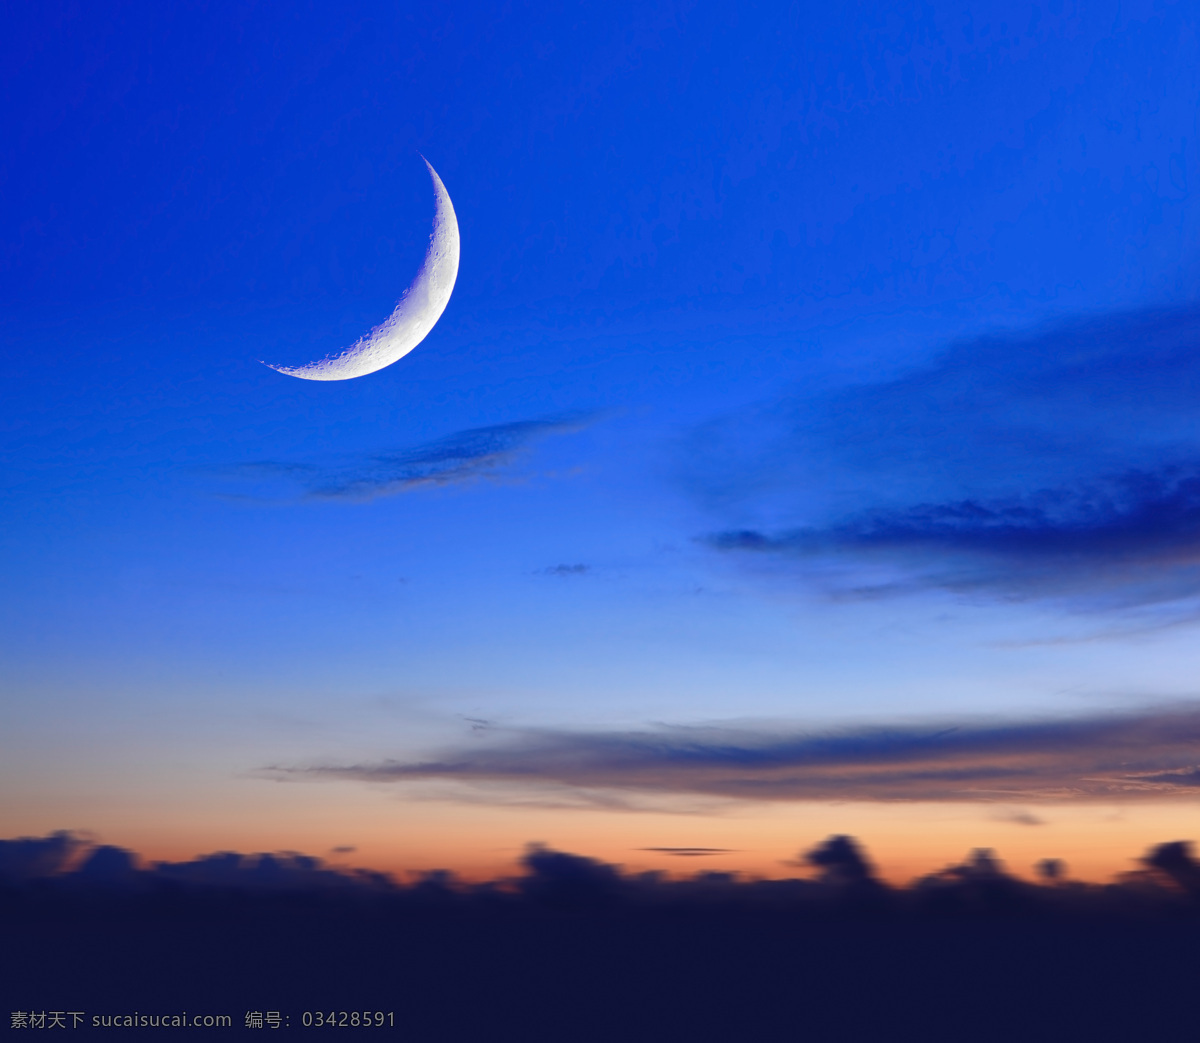 月夜背景素材 天空 乡村 星空 月亮 星星 月夜 夜景 夜晚 底纹背景 创意图片 自然风景 自然景观 蓝色